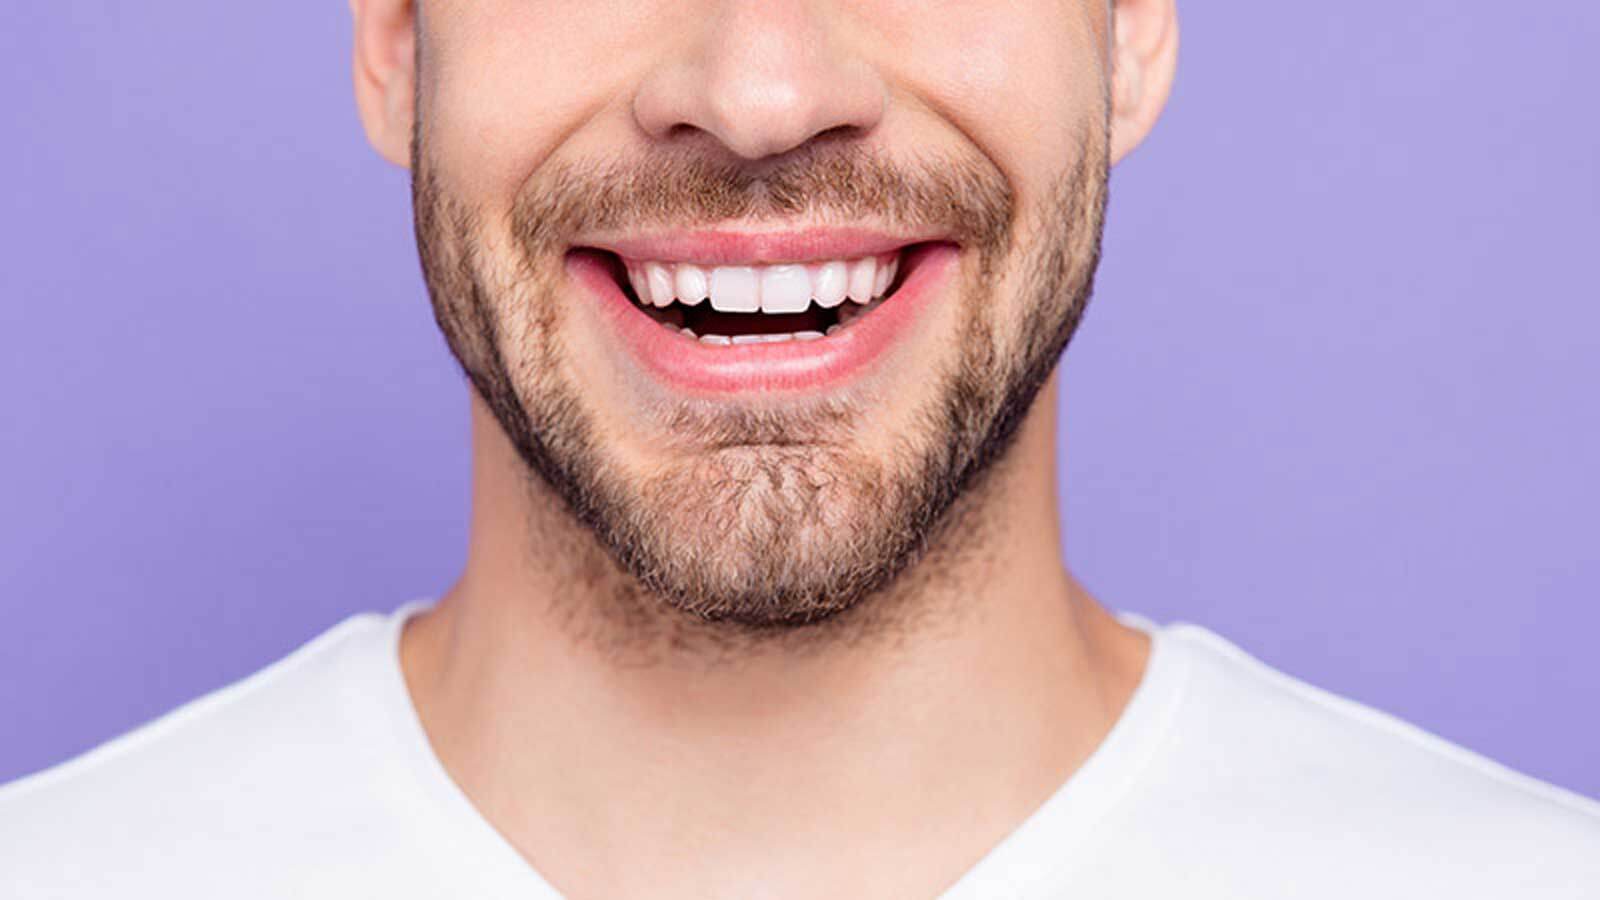   Smile Makeover: Dental Treatment